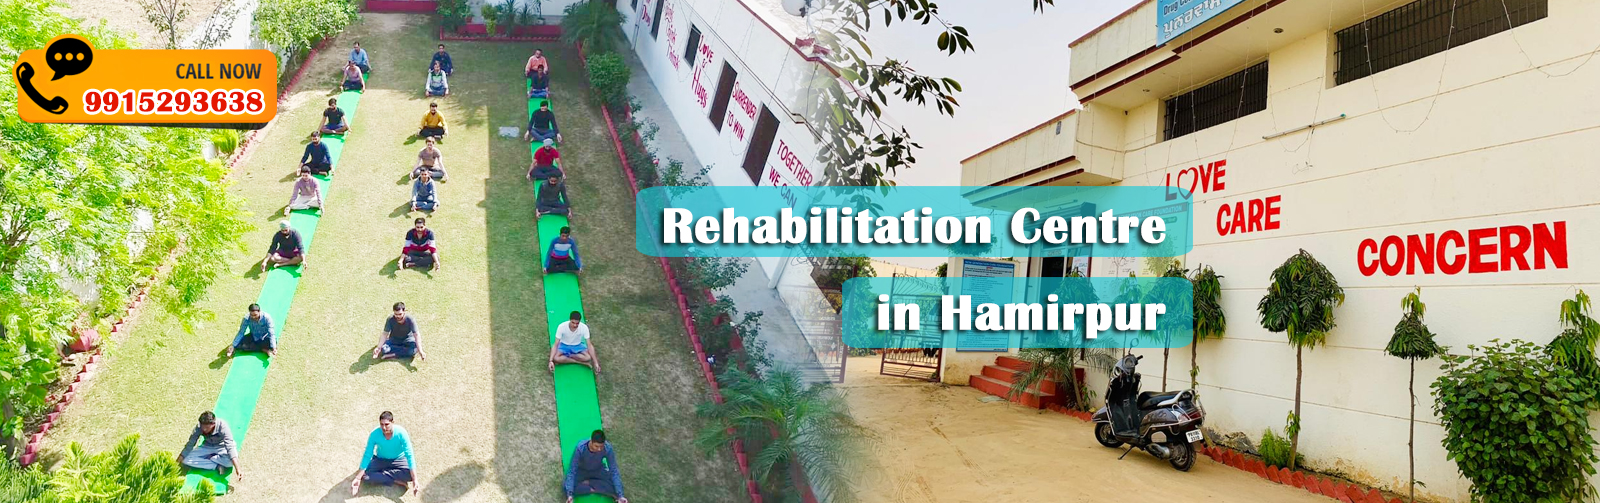 Rehabilitation Centre in Hamirpur